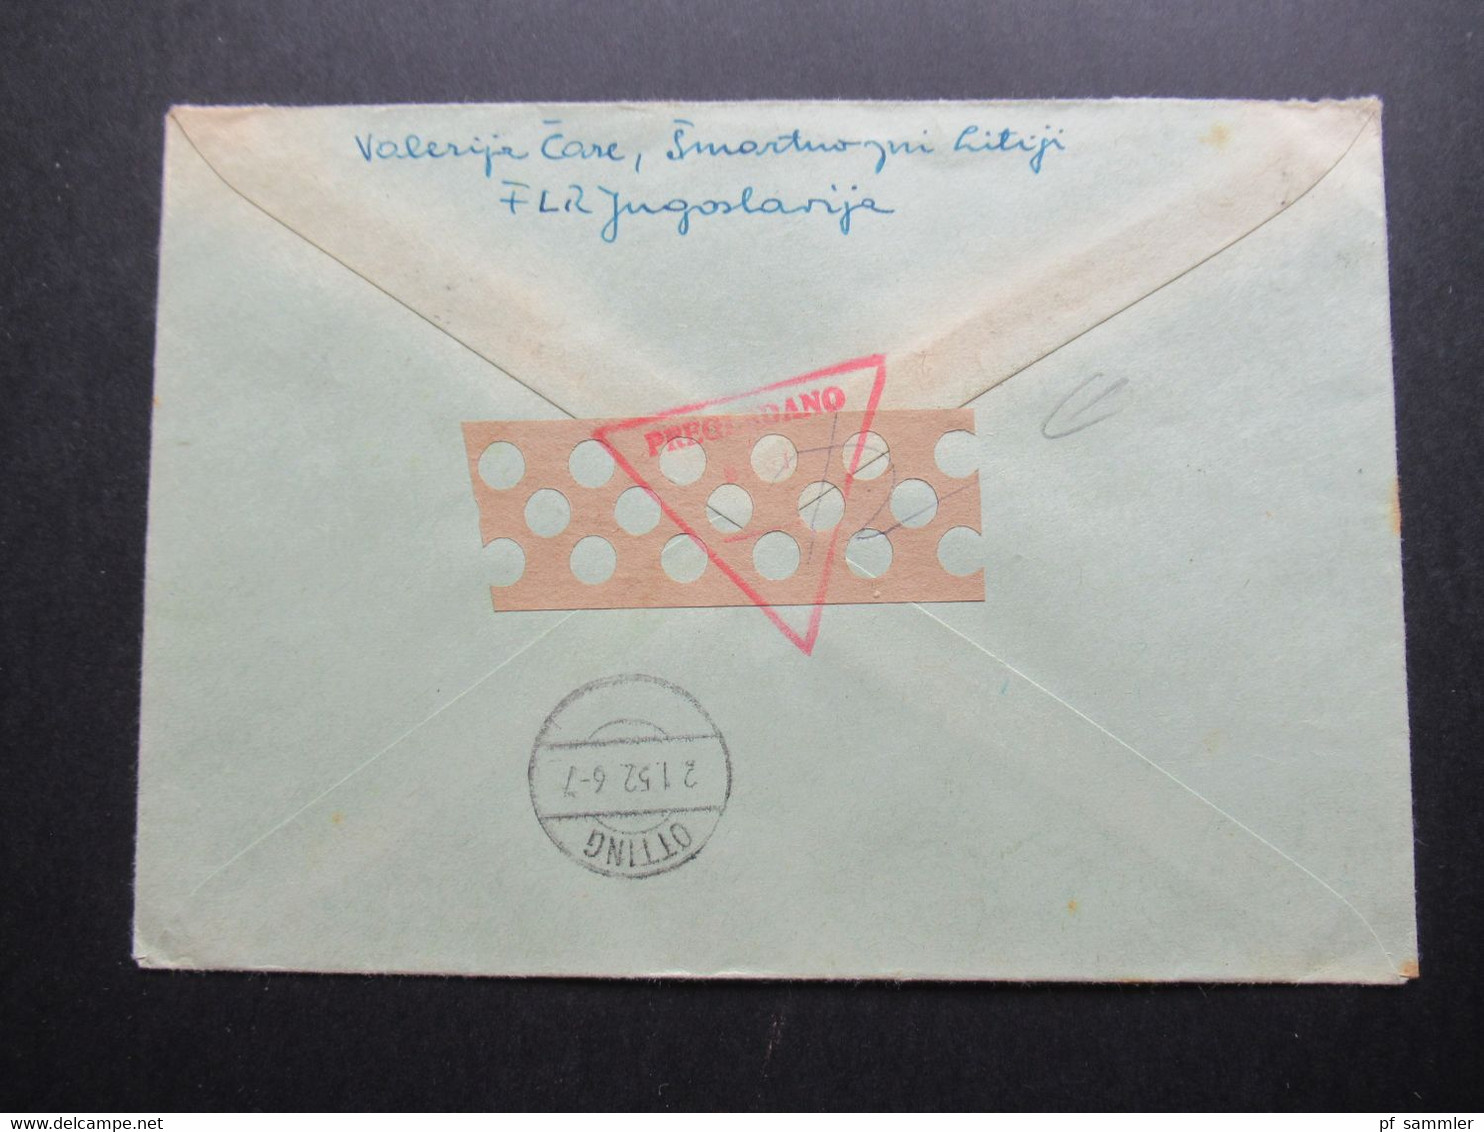 Jugoslawien 1951 Flugzeuge über Landschaften Nr.649/650 Einschreiben Beograd 1 Nach Otting Roter Dreieck Zensurstempel - Briefe U. Dokumente